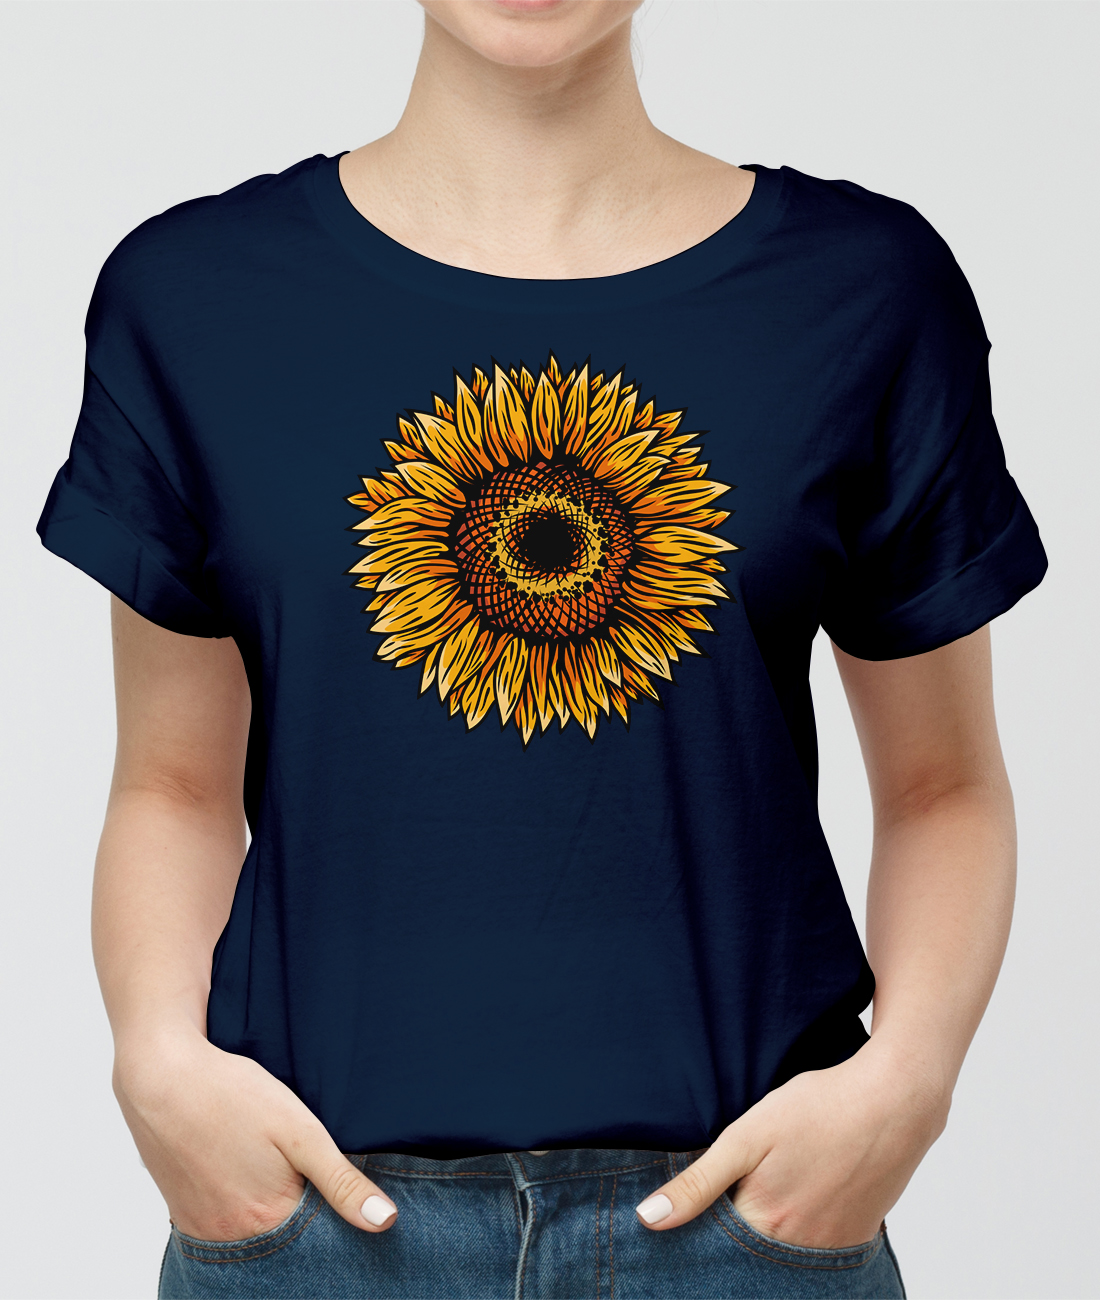 Letné tričko slnečnica